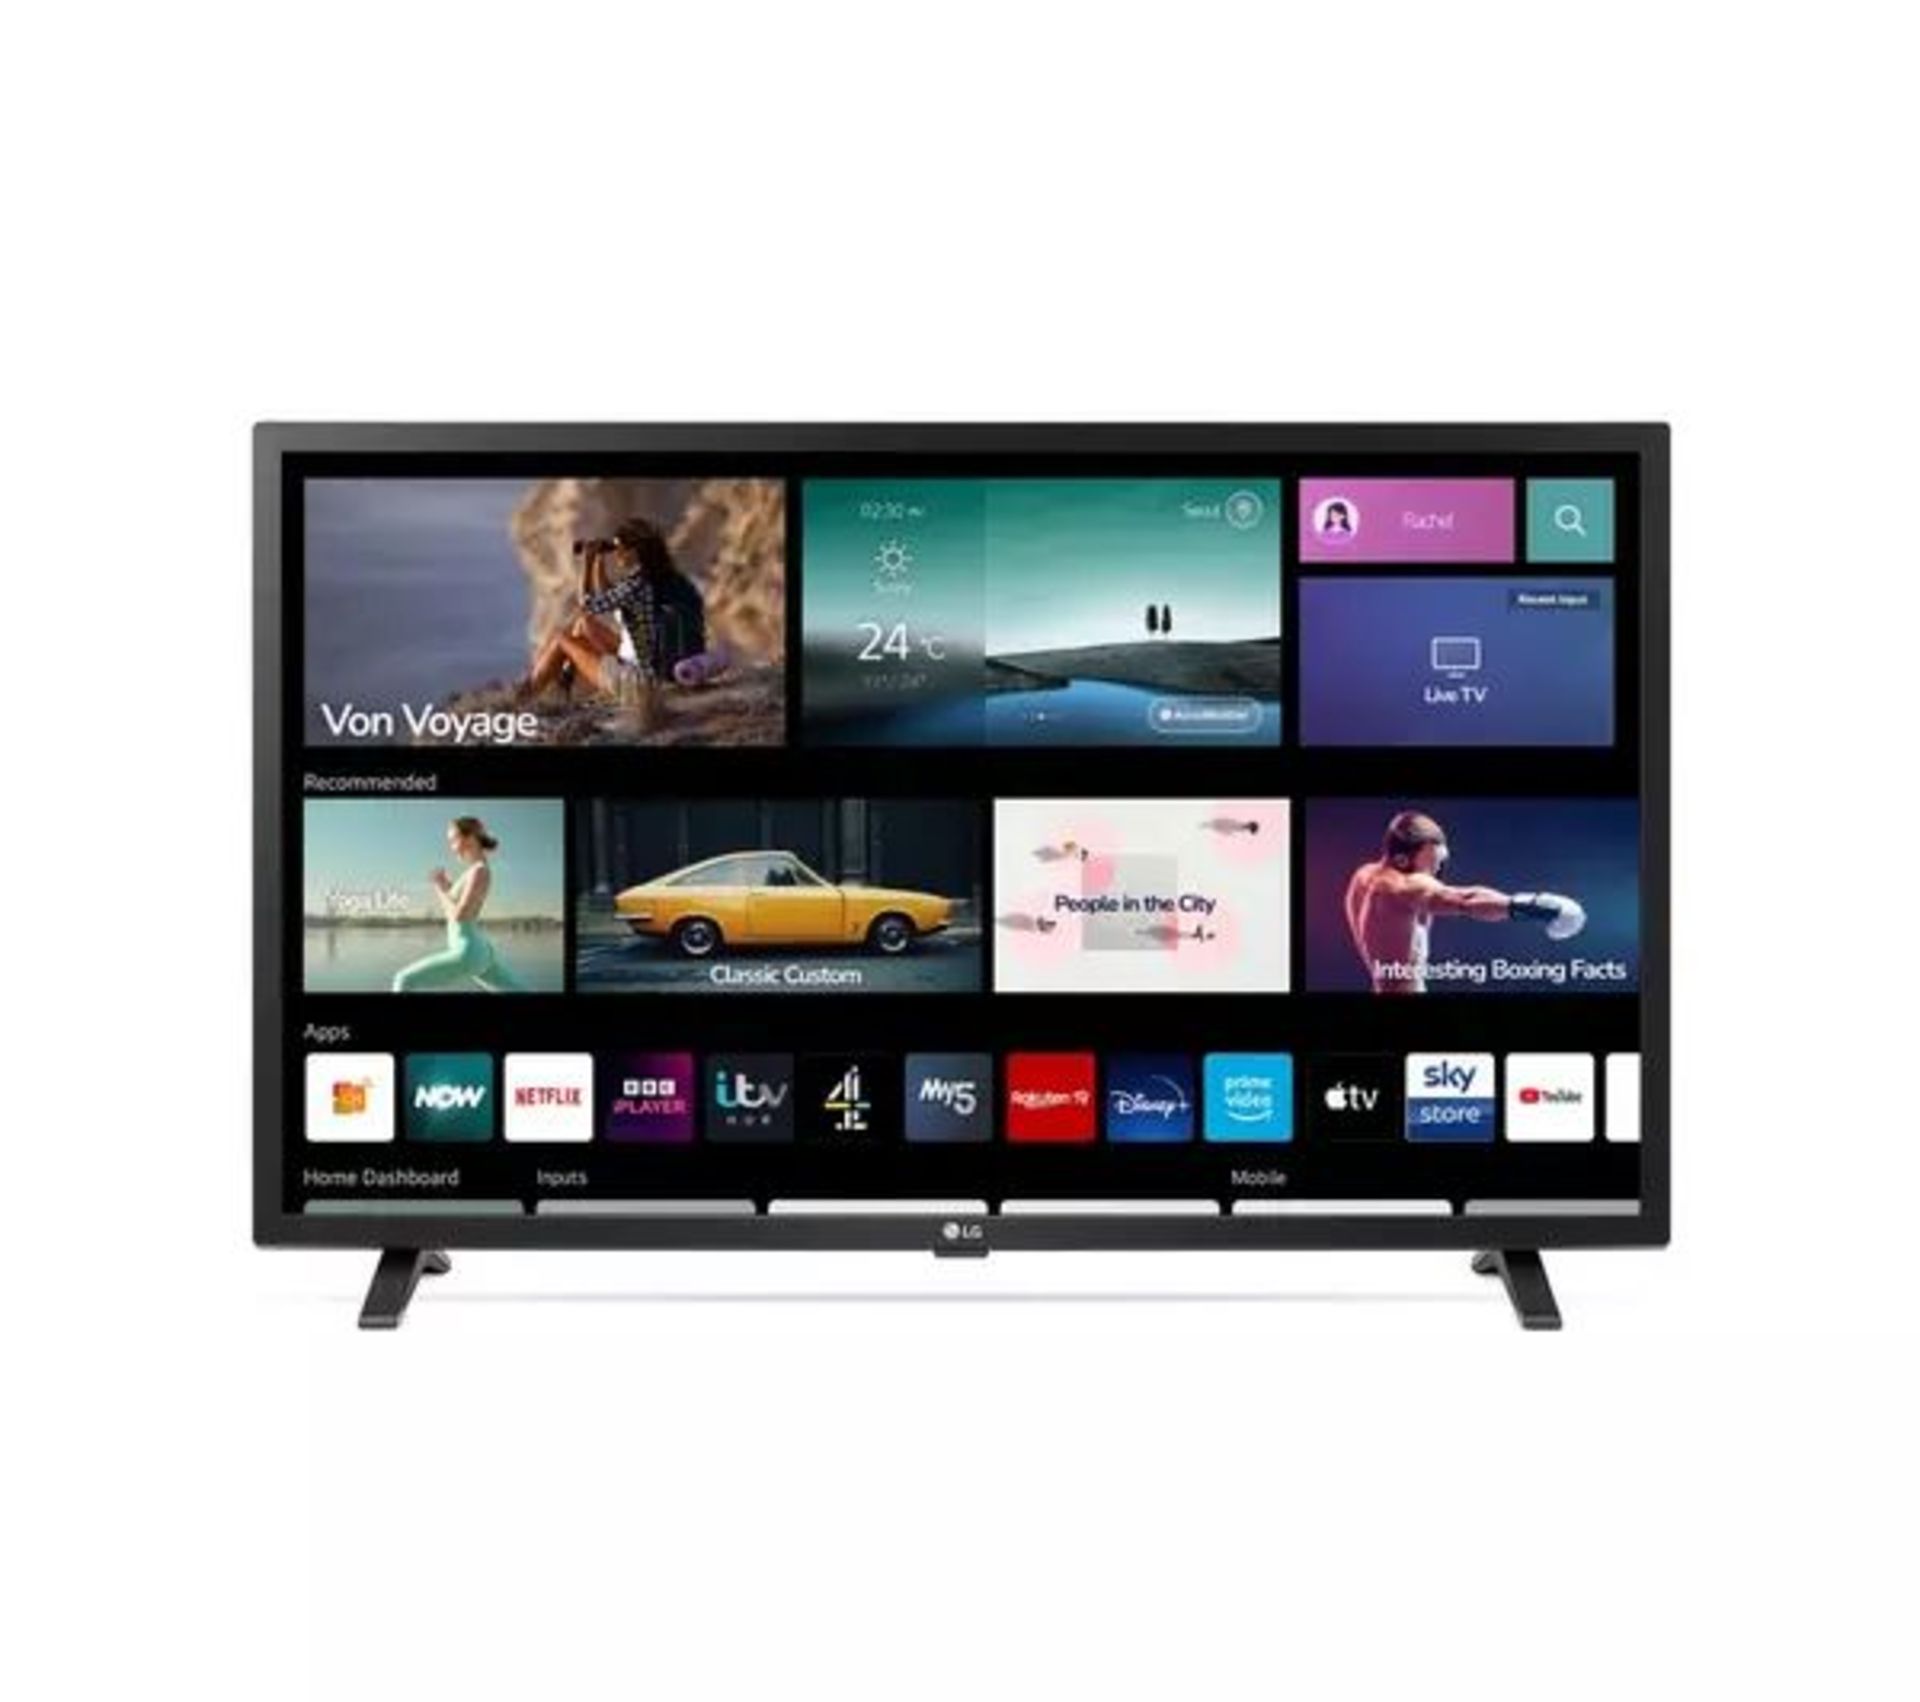 LG 32LQ63006LA 32" Smart Full HD HDR LED TV. - BW. RRP £319.99. - The Full HD resolution and - Image 2 of 2